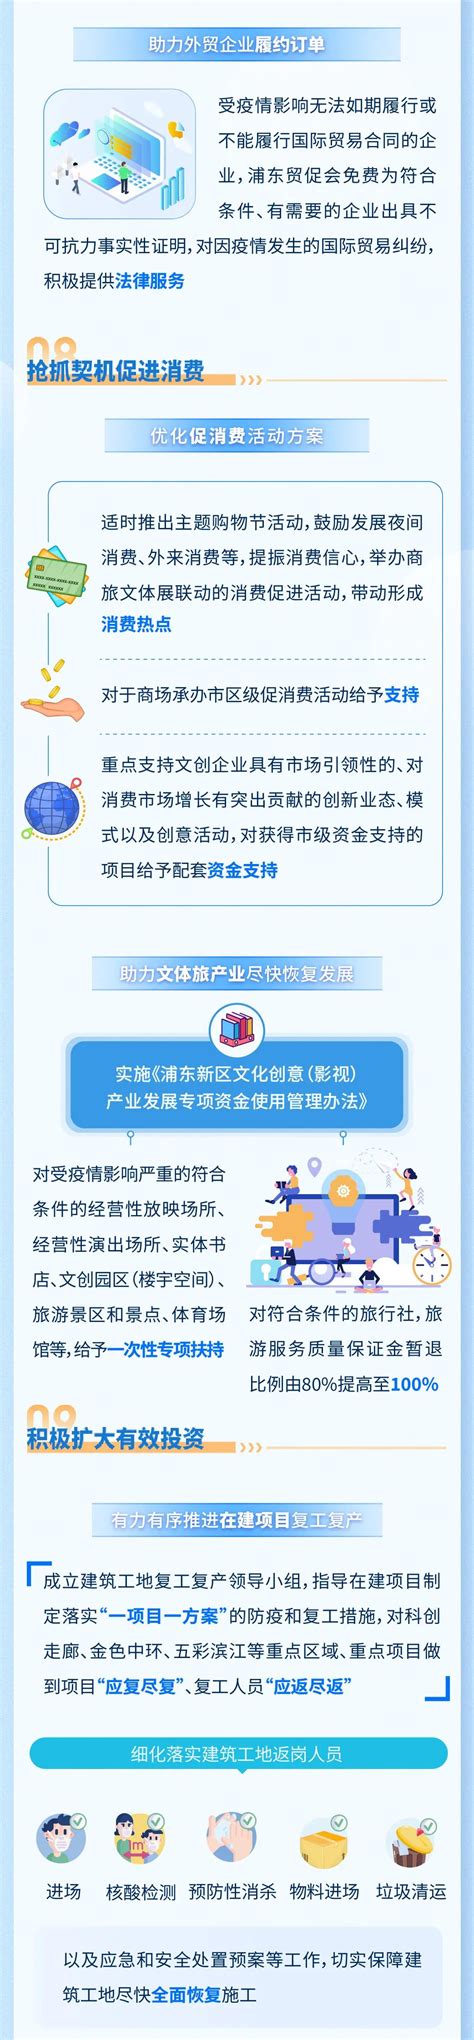 浦东新区今天开始实施市场主体登记确认新规 ——商事登记改革的高水平体现 - 北京宝盈律师事务所